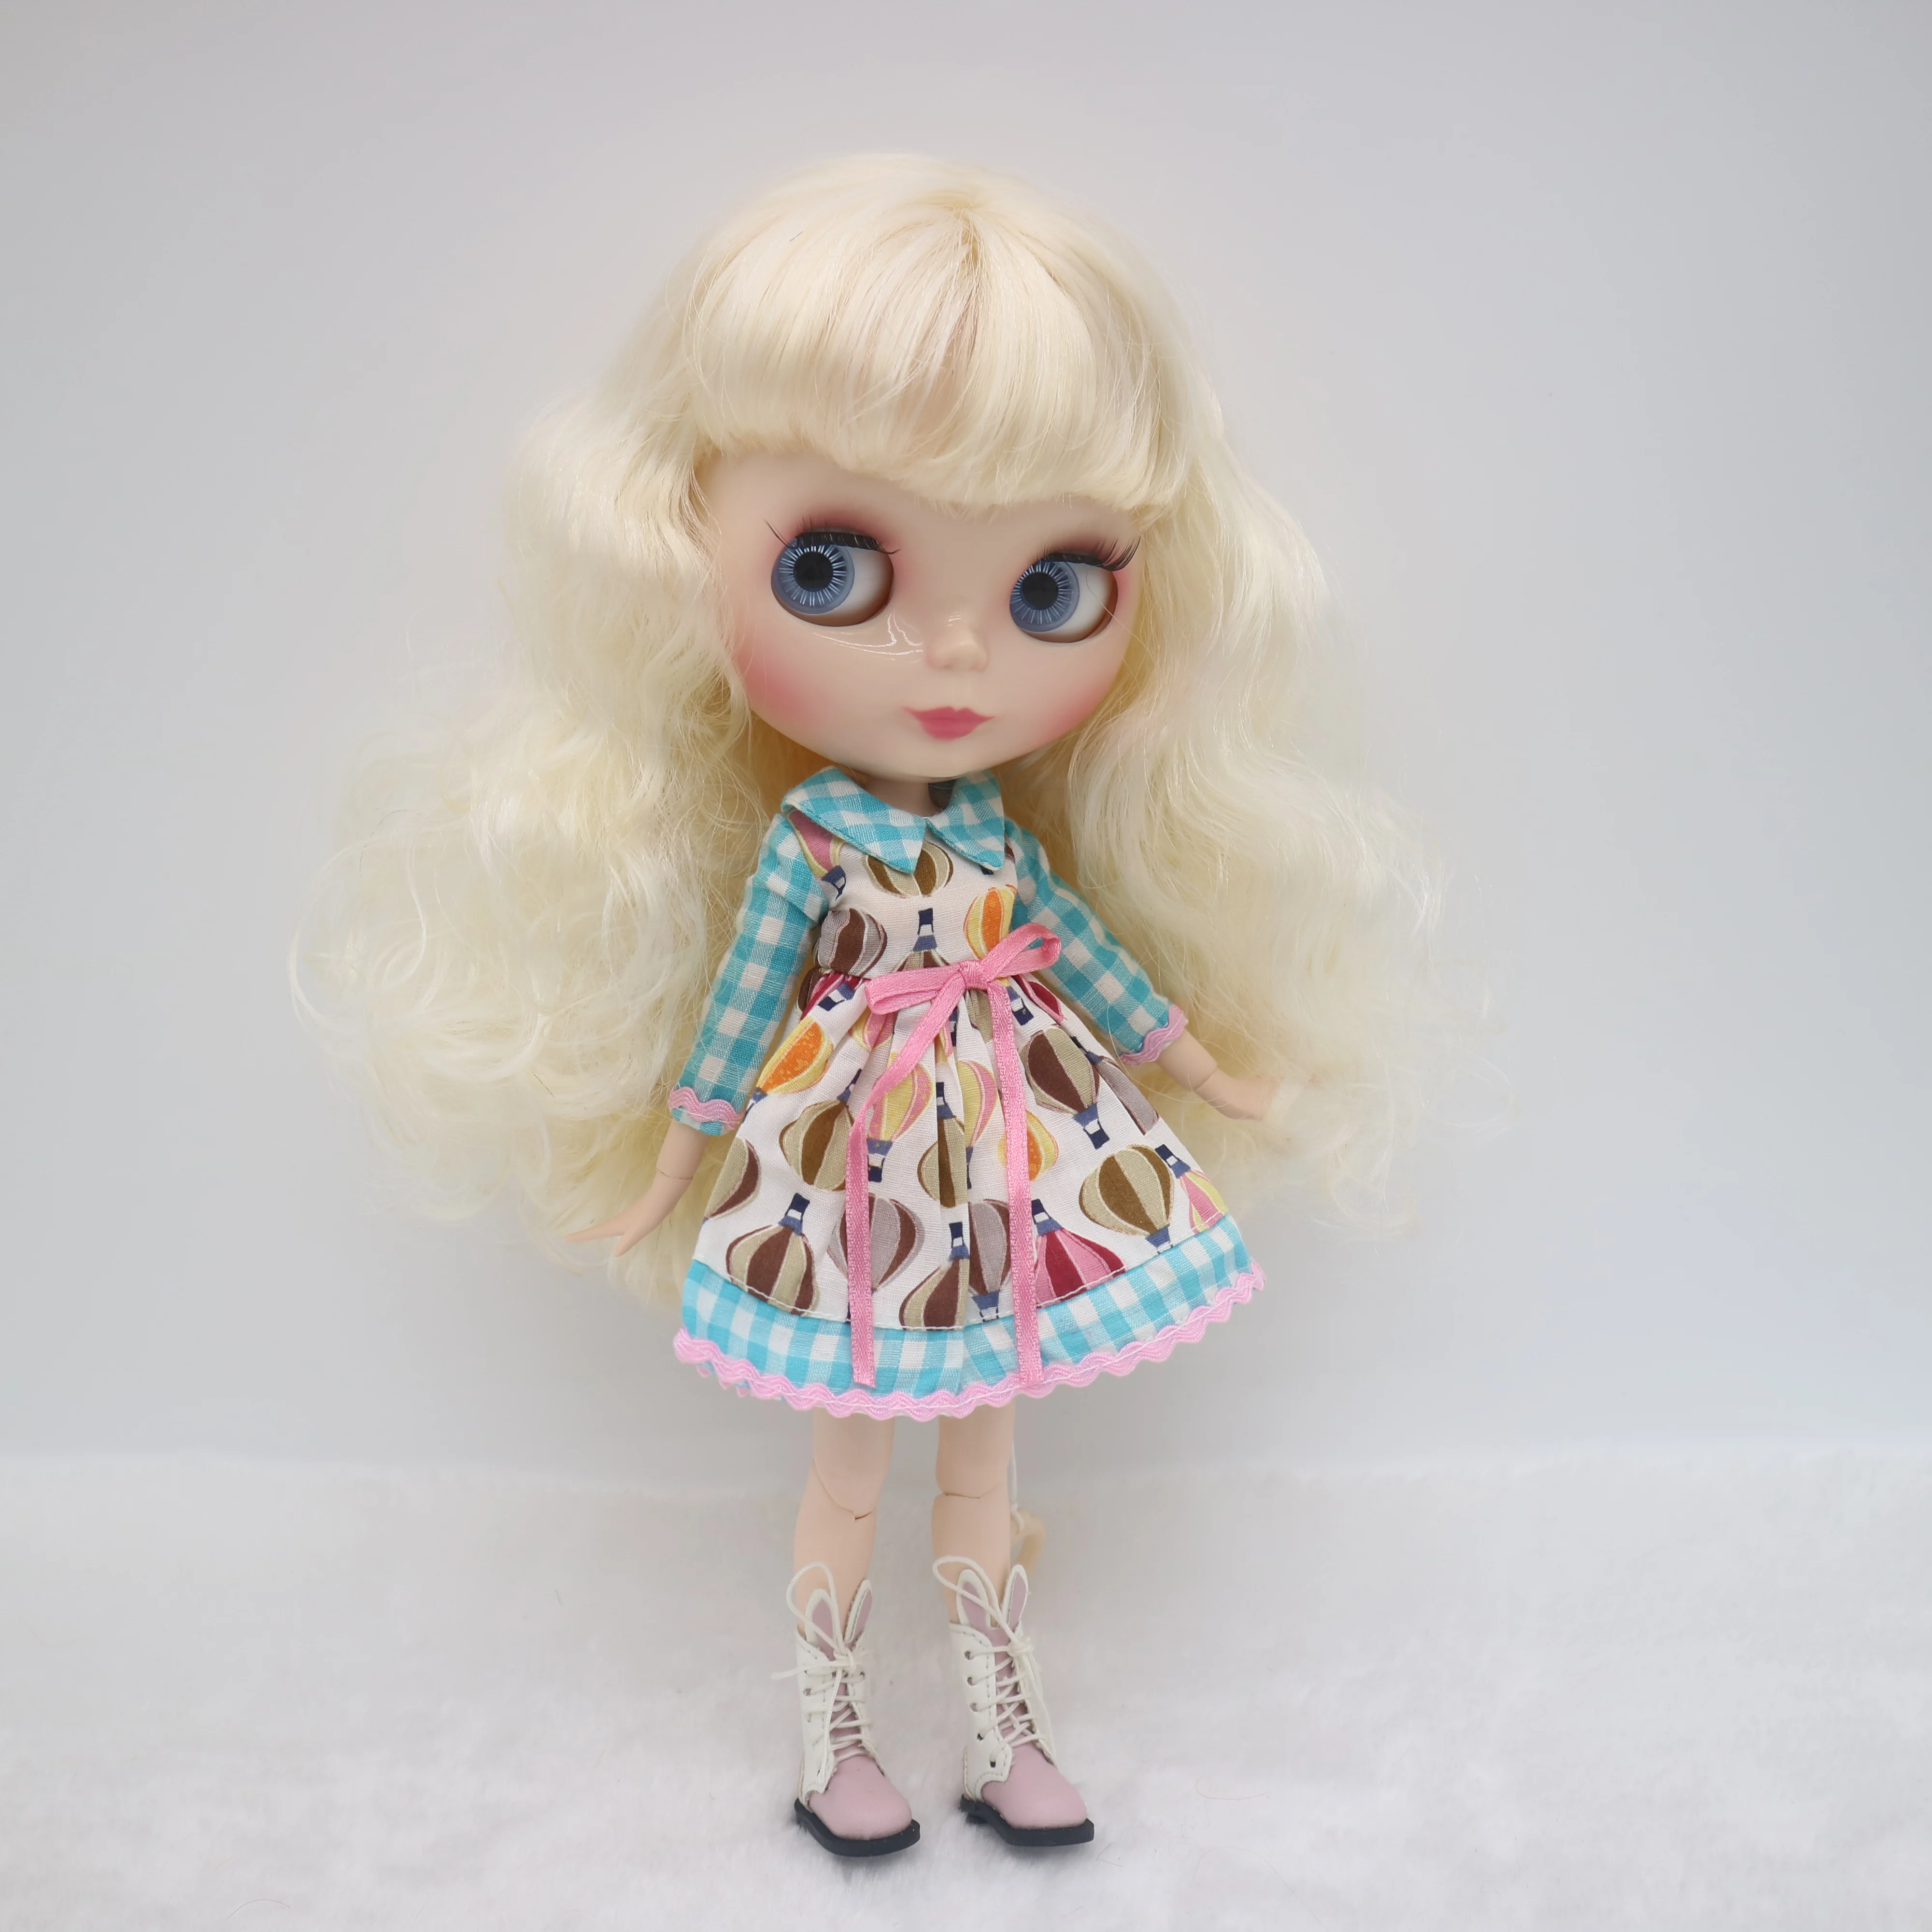 Кукла Blyth на заказ . куклы длиной 30 см со светлыми волосами Изображение 3